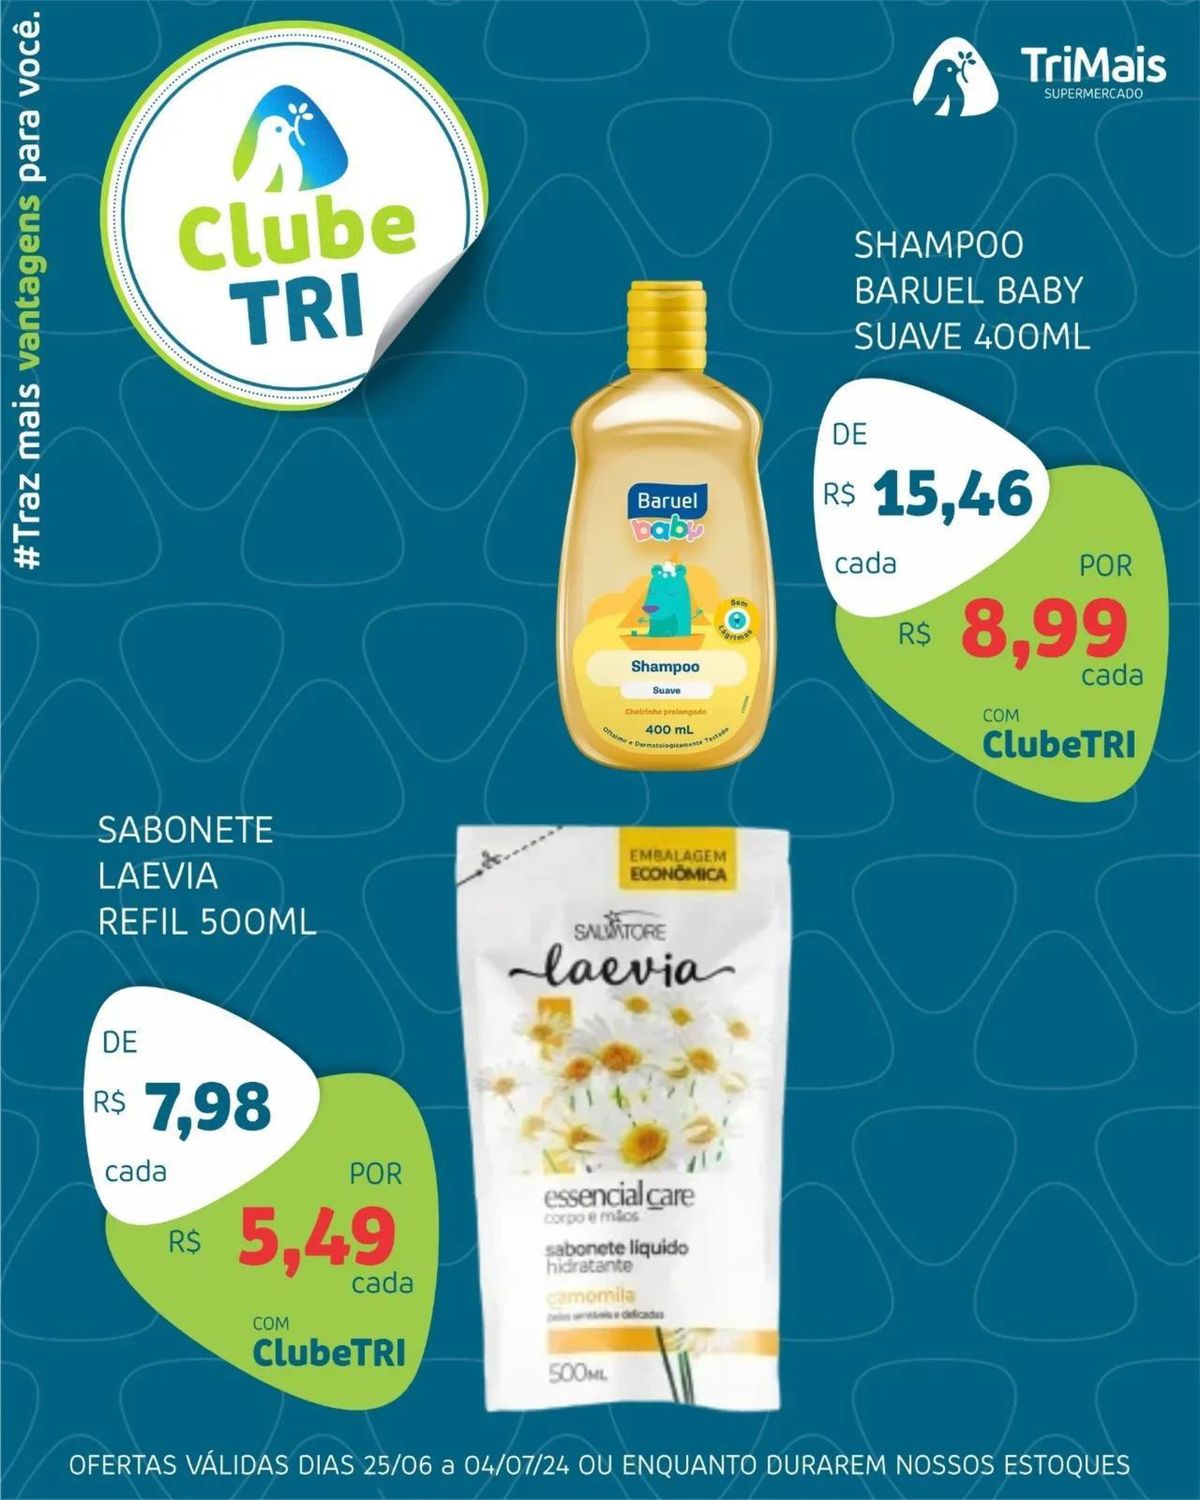 Shampoo Suave 400ml e Sabonete Laevia 500ml em promoção